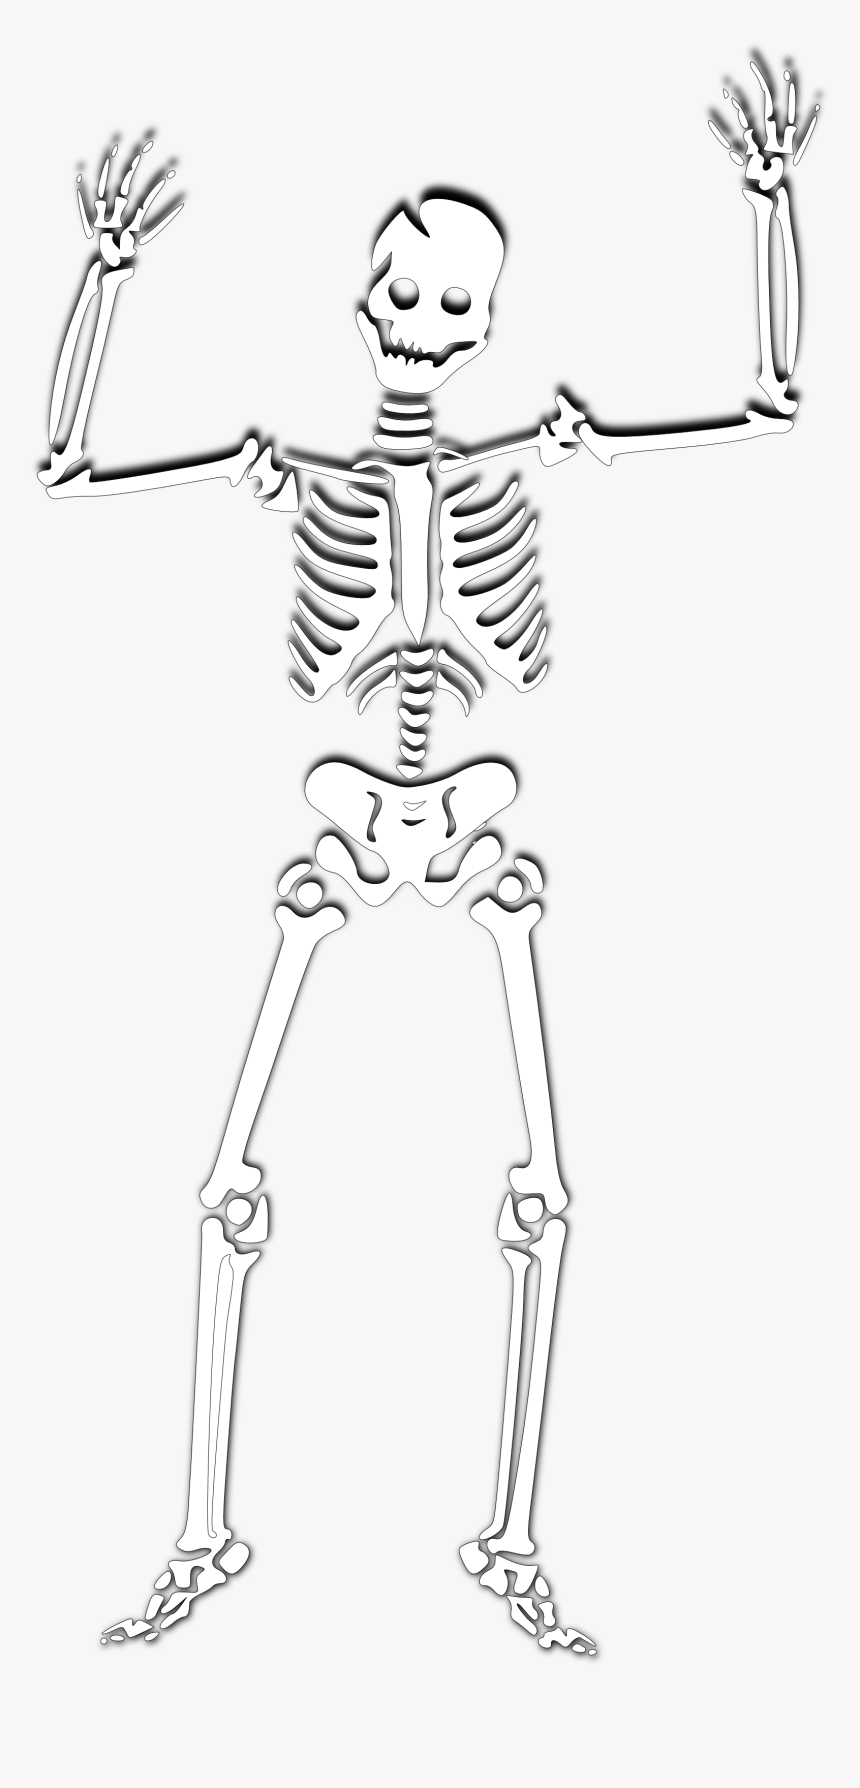 Skeleton Clip Art - Skeleton Cartoon Transparent Background, HD Png Download, Free Download